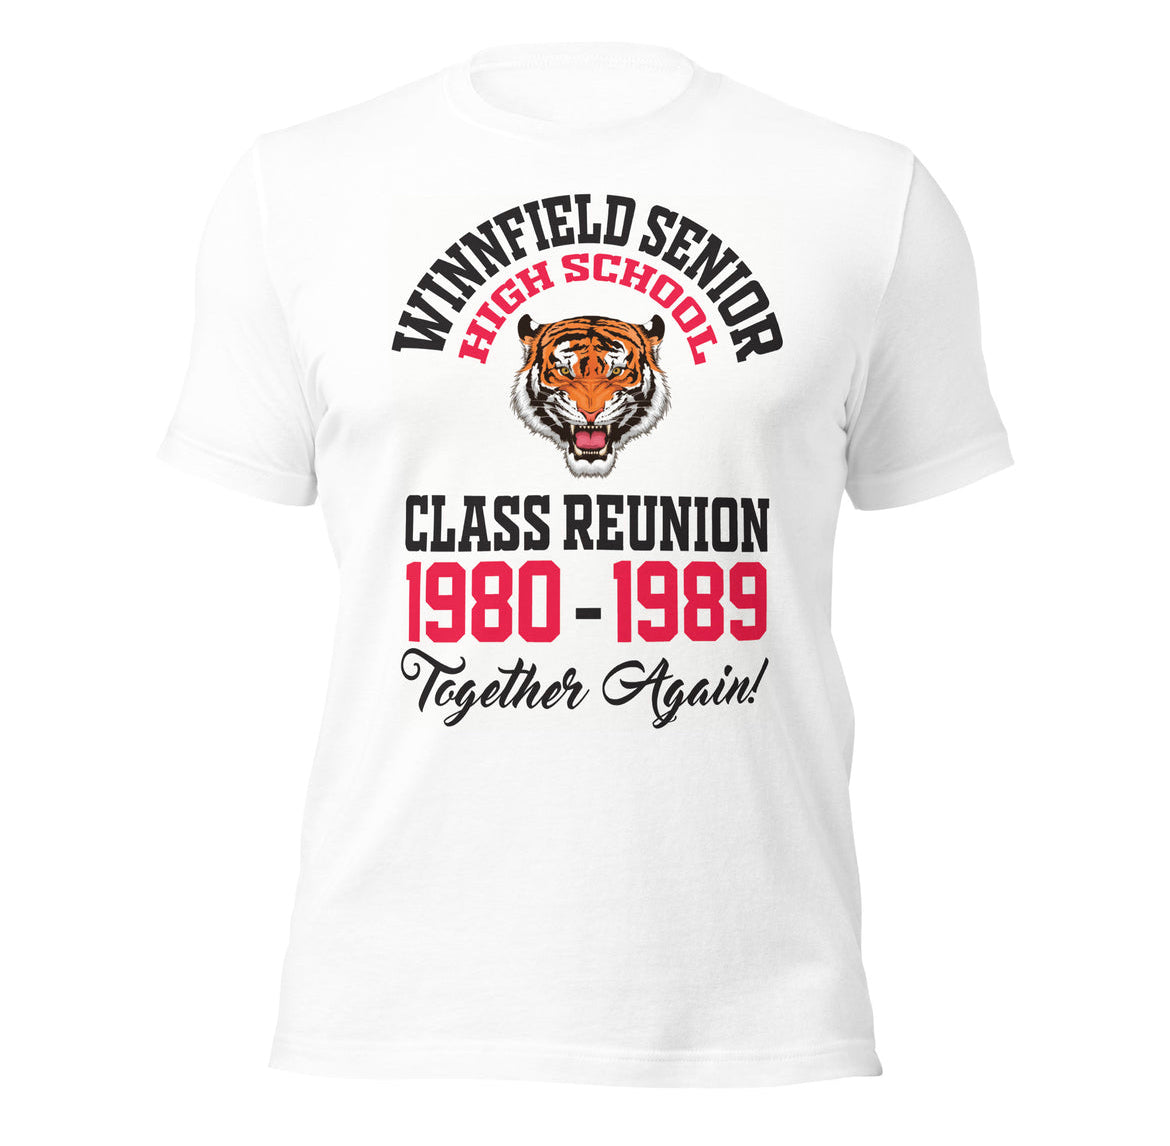 Winnfield Senior High School Class Reunion T-Shirt (1980-1989)